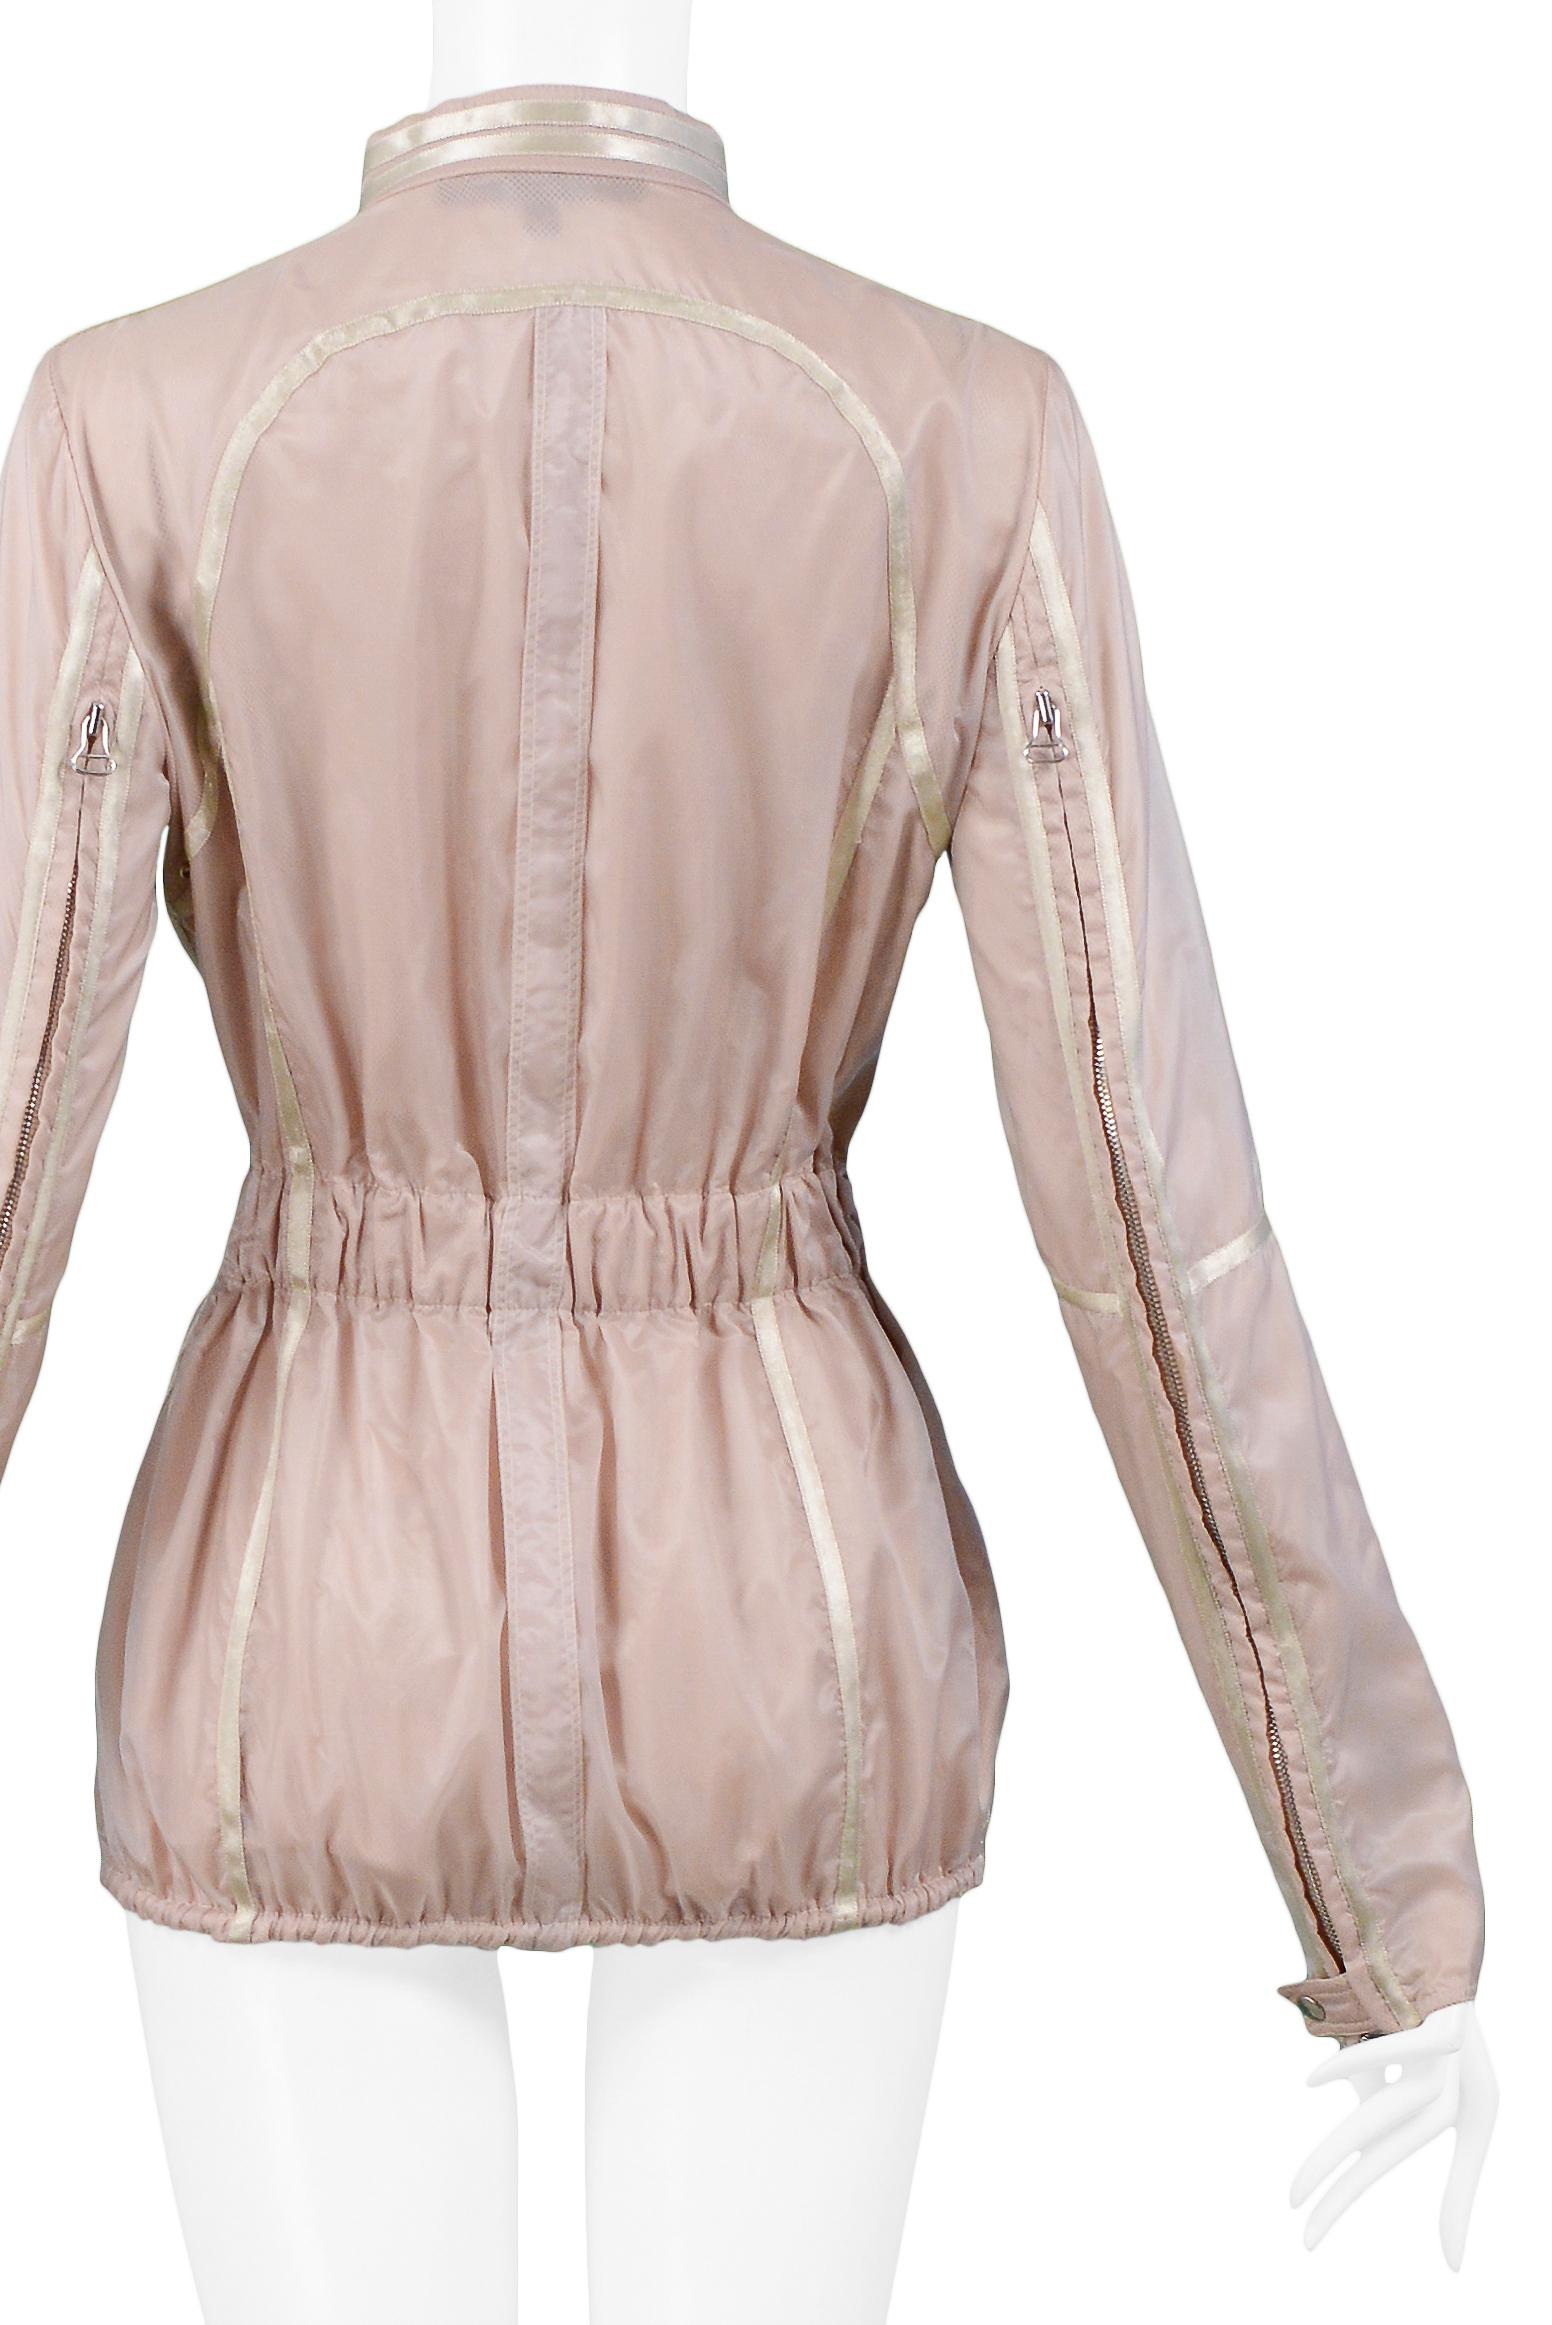 Gianfranco Ferre Pink Nylon Windbreaker Jacket 2005 For Sale 1